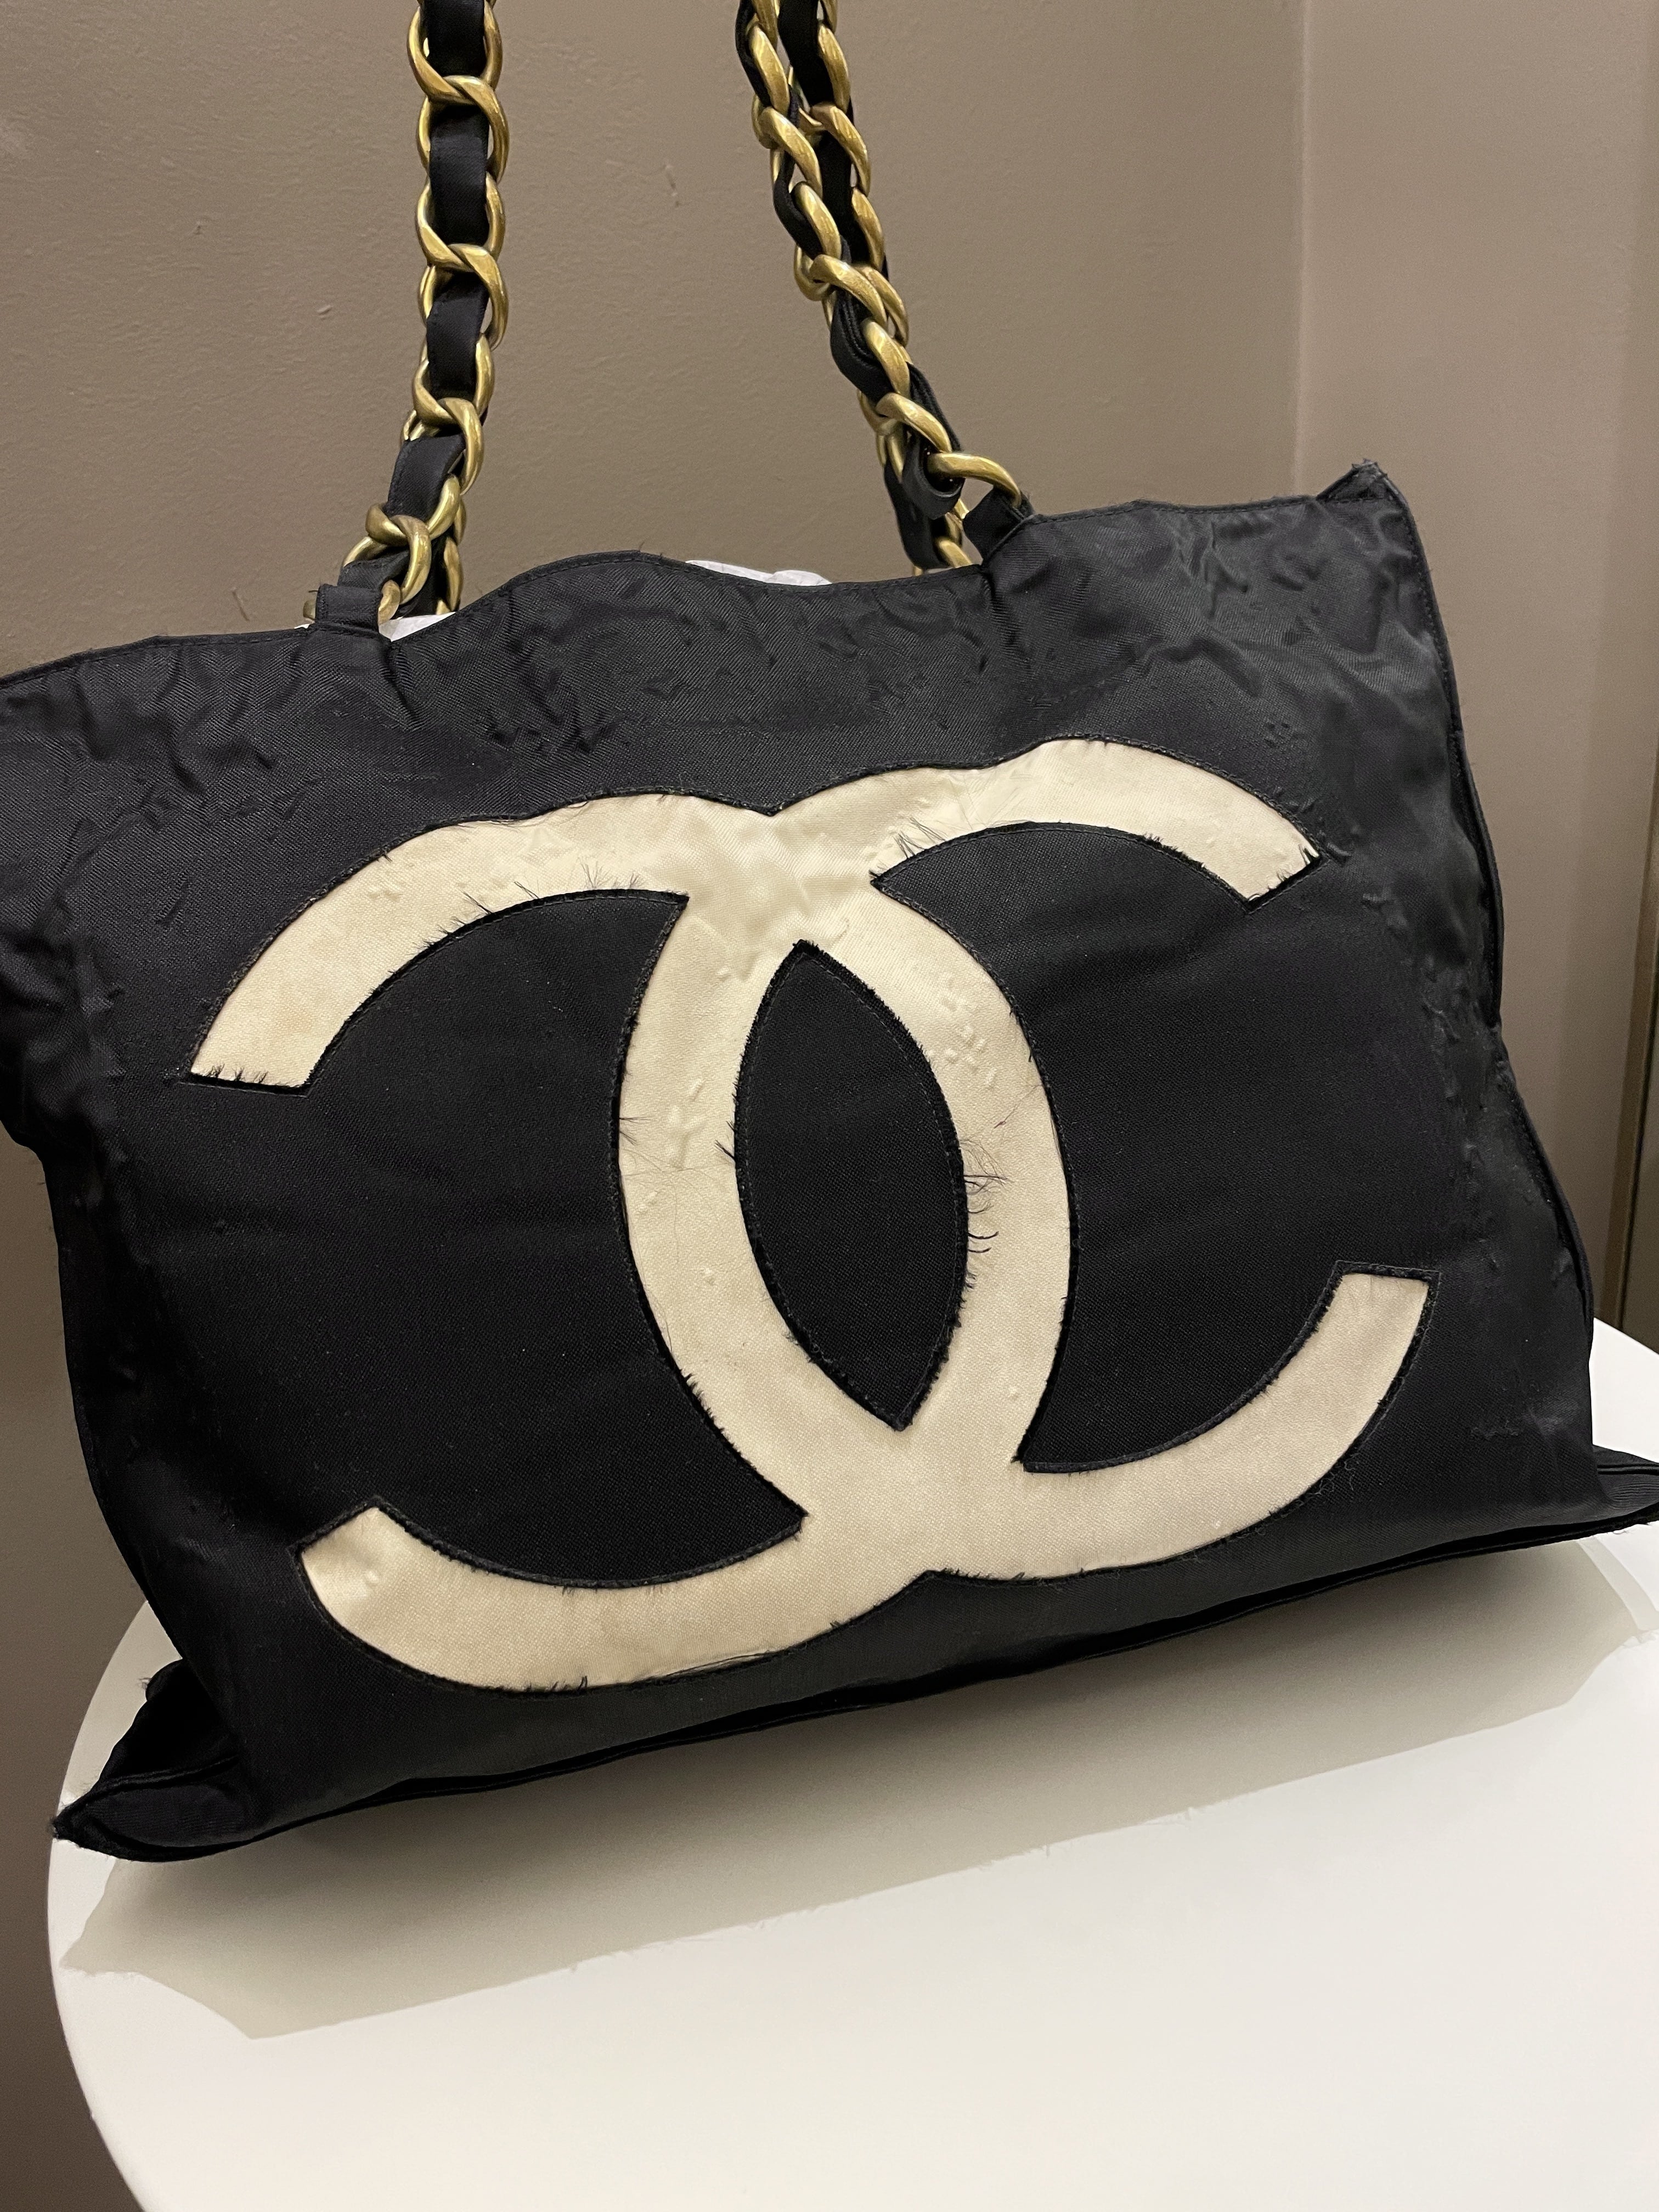 Chanel Cc Vintage Tote Bag Black Canvas